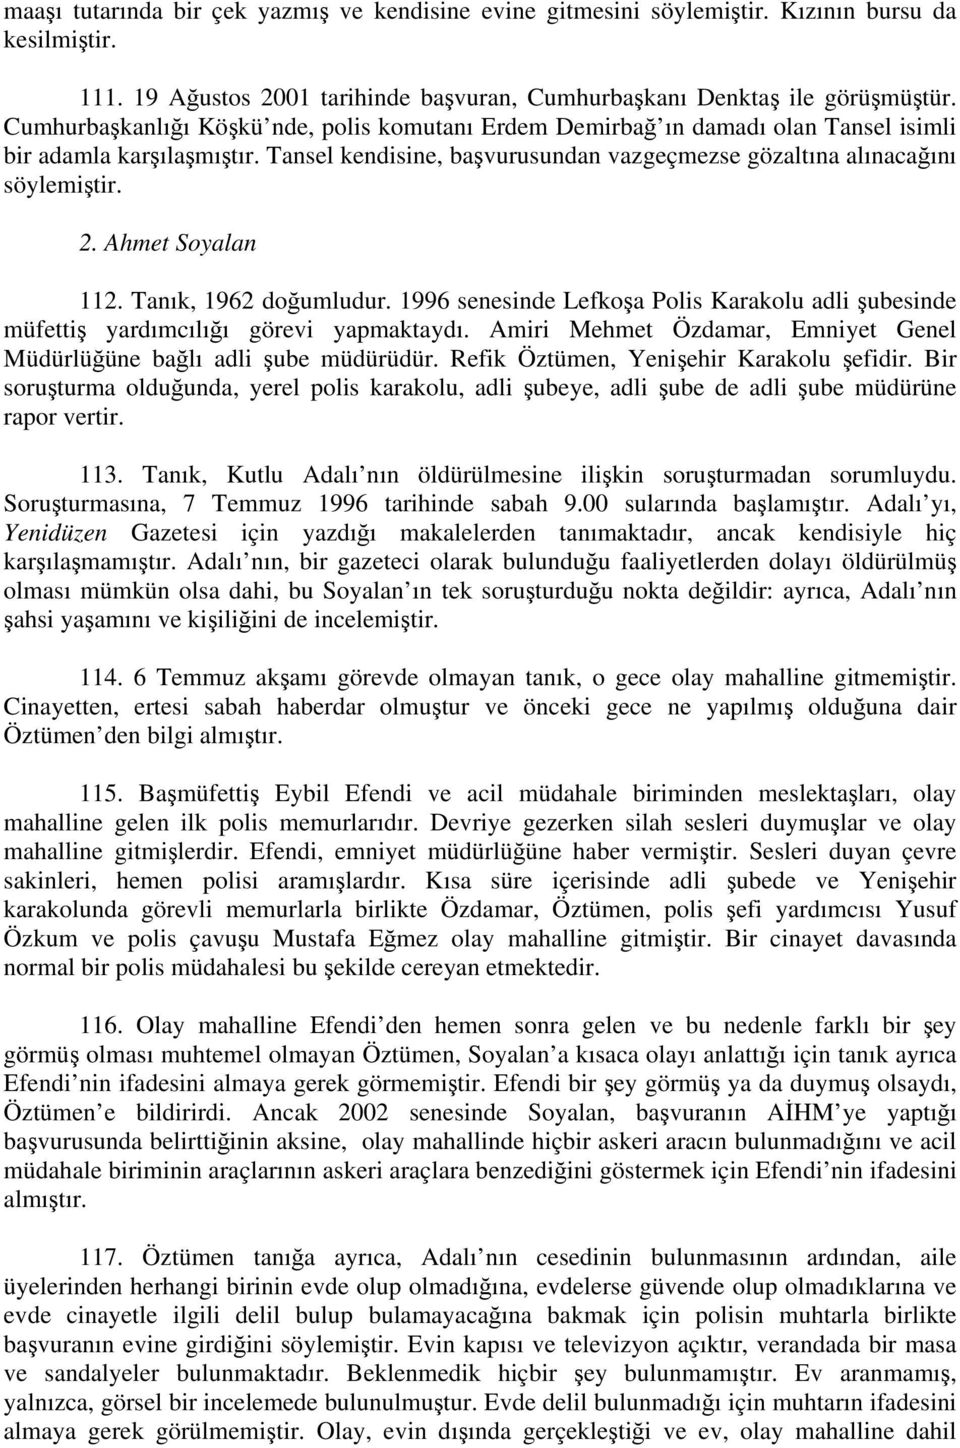 Ahmet Soyalan 112. Tanık, 1962 doğumludur. 1996 senesinde Lefkoşa Polis Karakolu adli şubesinde müfettiş yardımcılığı görevi yapmaktaydı.